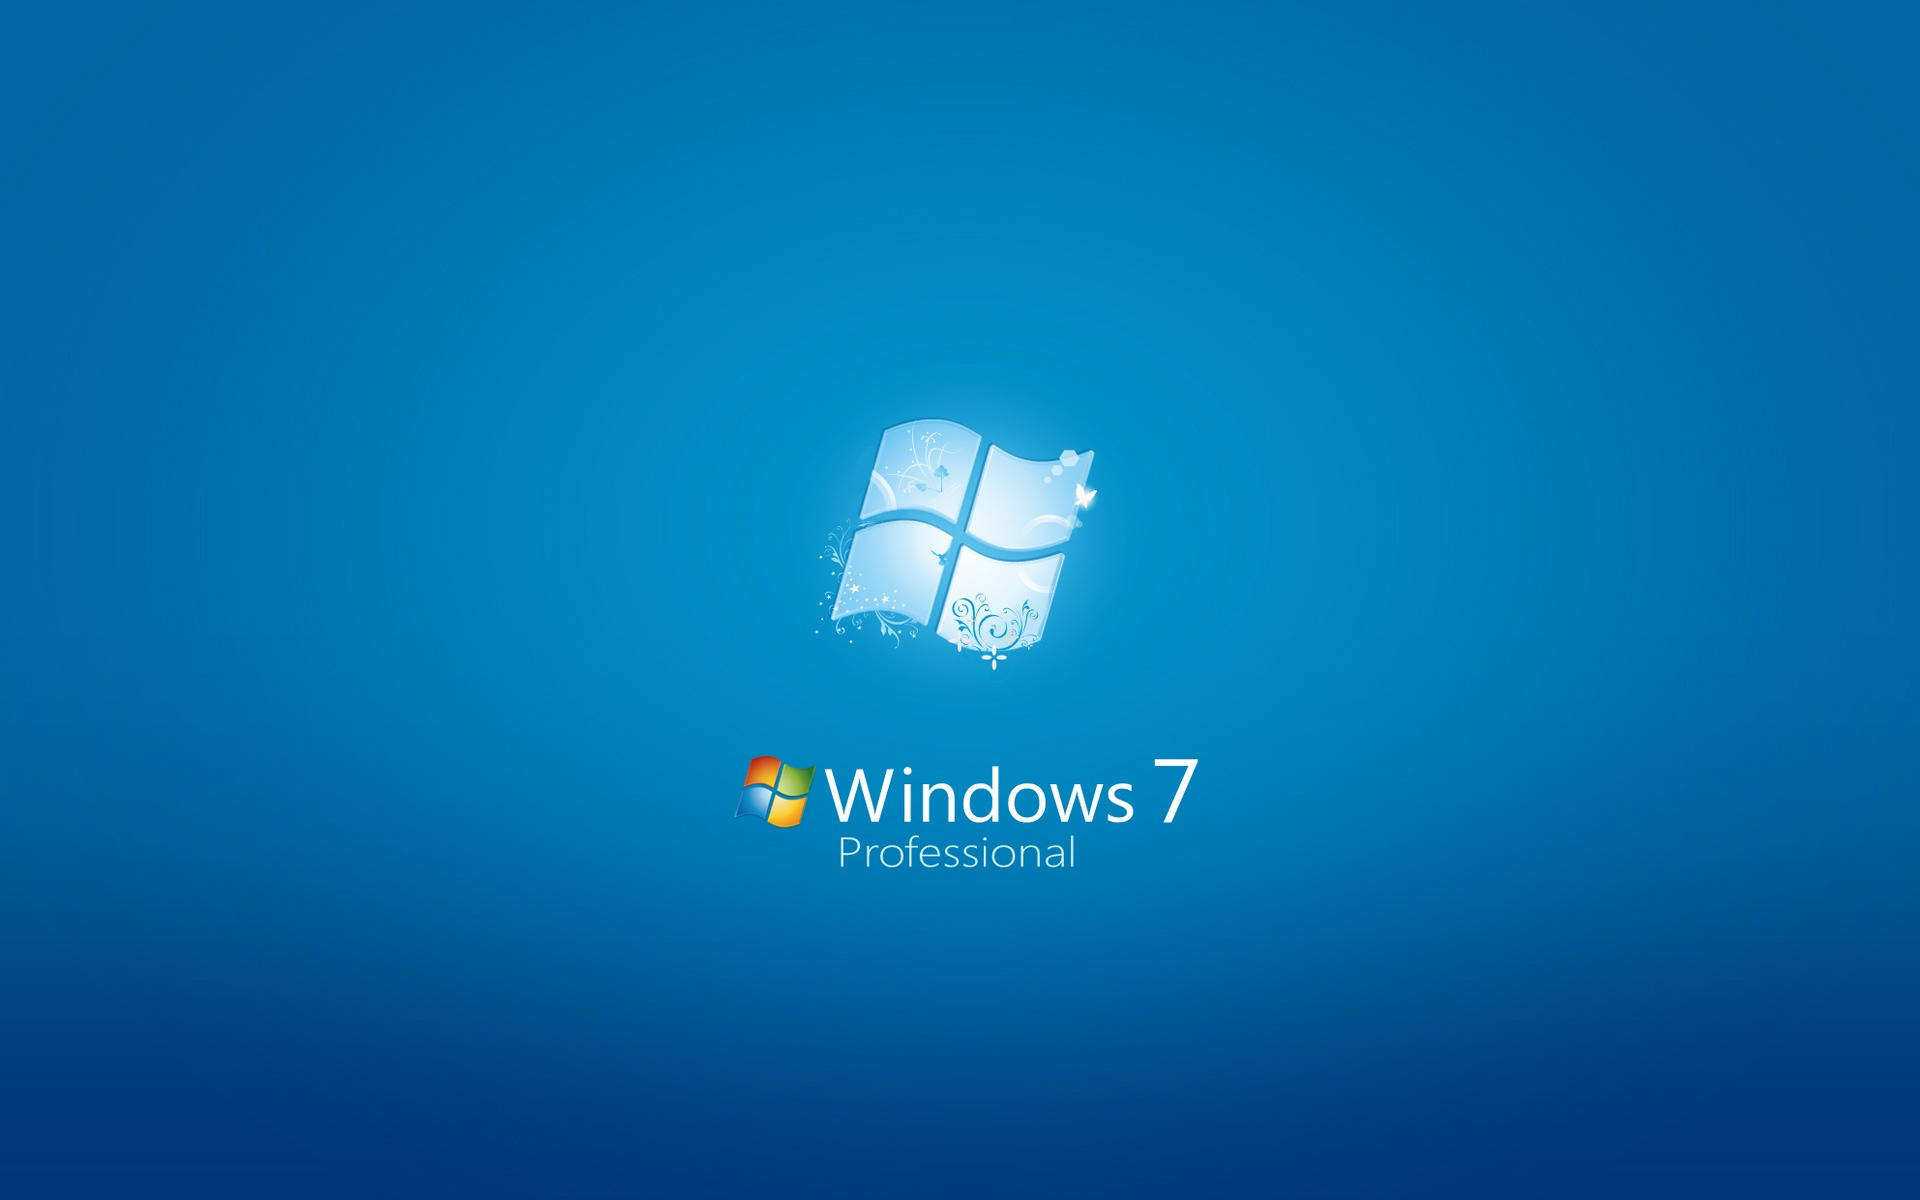 Aesthetic Blue Windows 7 Logo Background